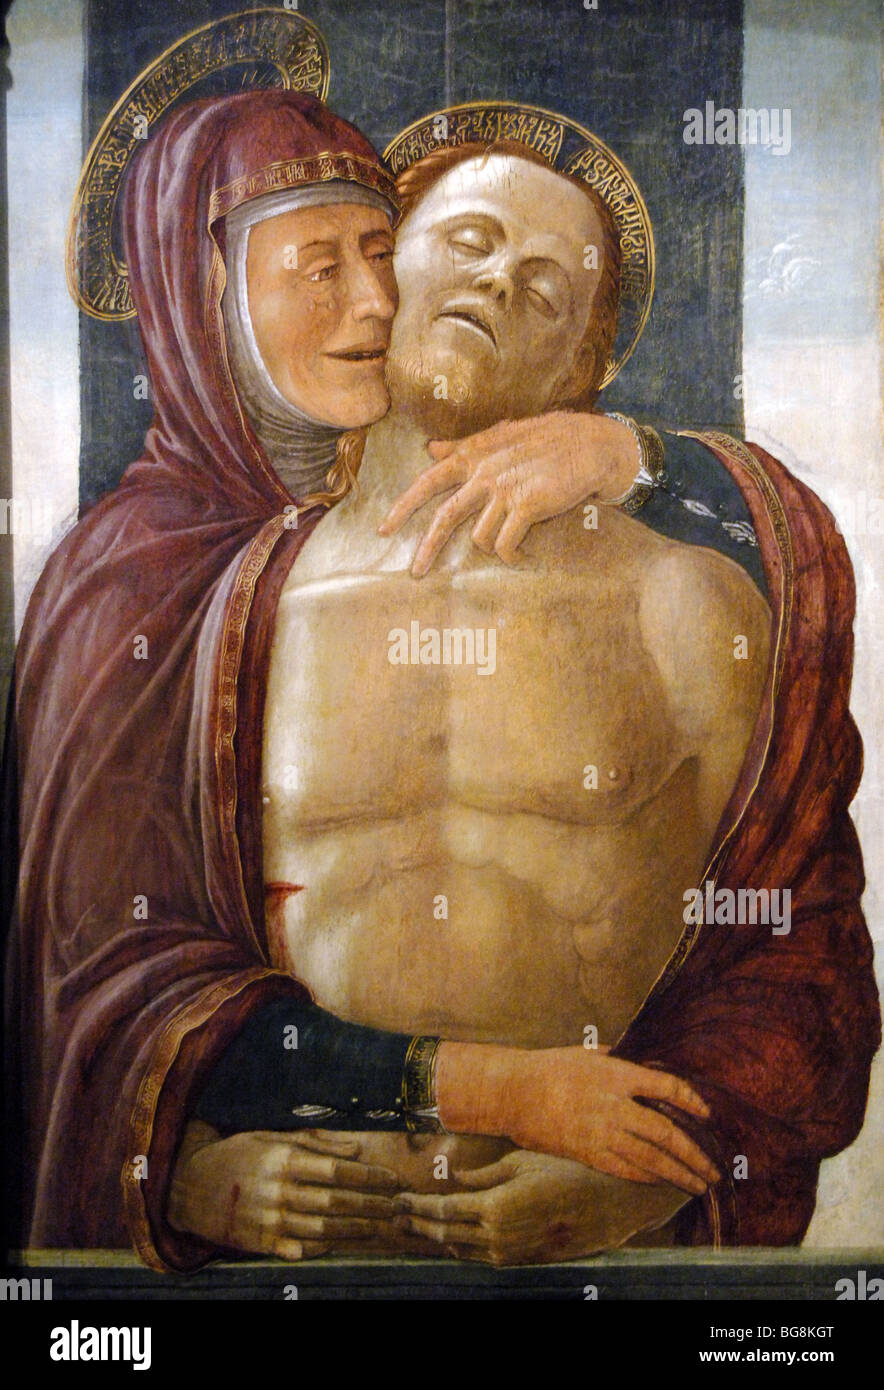 MONTAGNANA, Jacopo da (1440-/43-1499). Peintre italien. MADONNA ET LE CHRIST MORT. Tempera sur bois. Banque D'Images